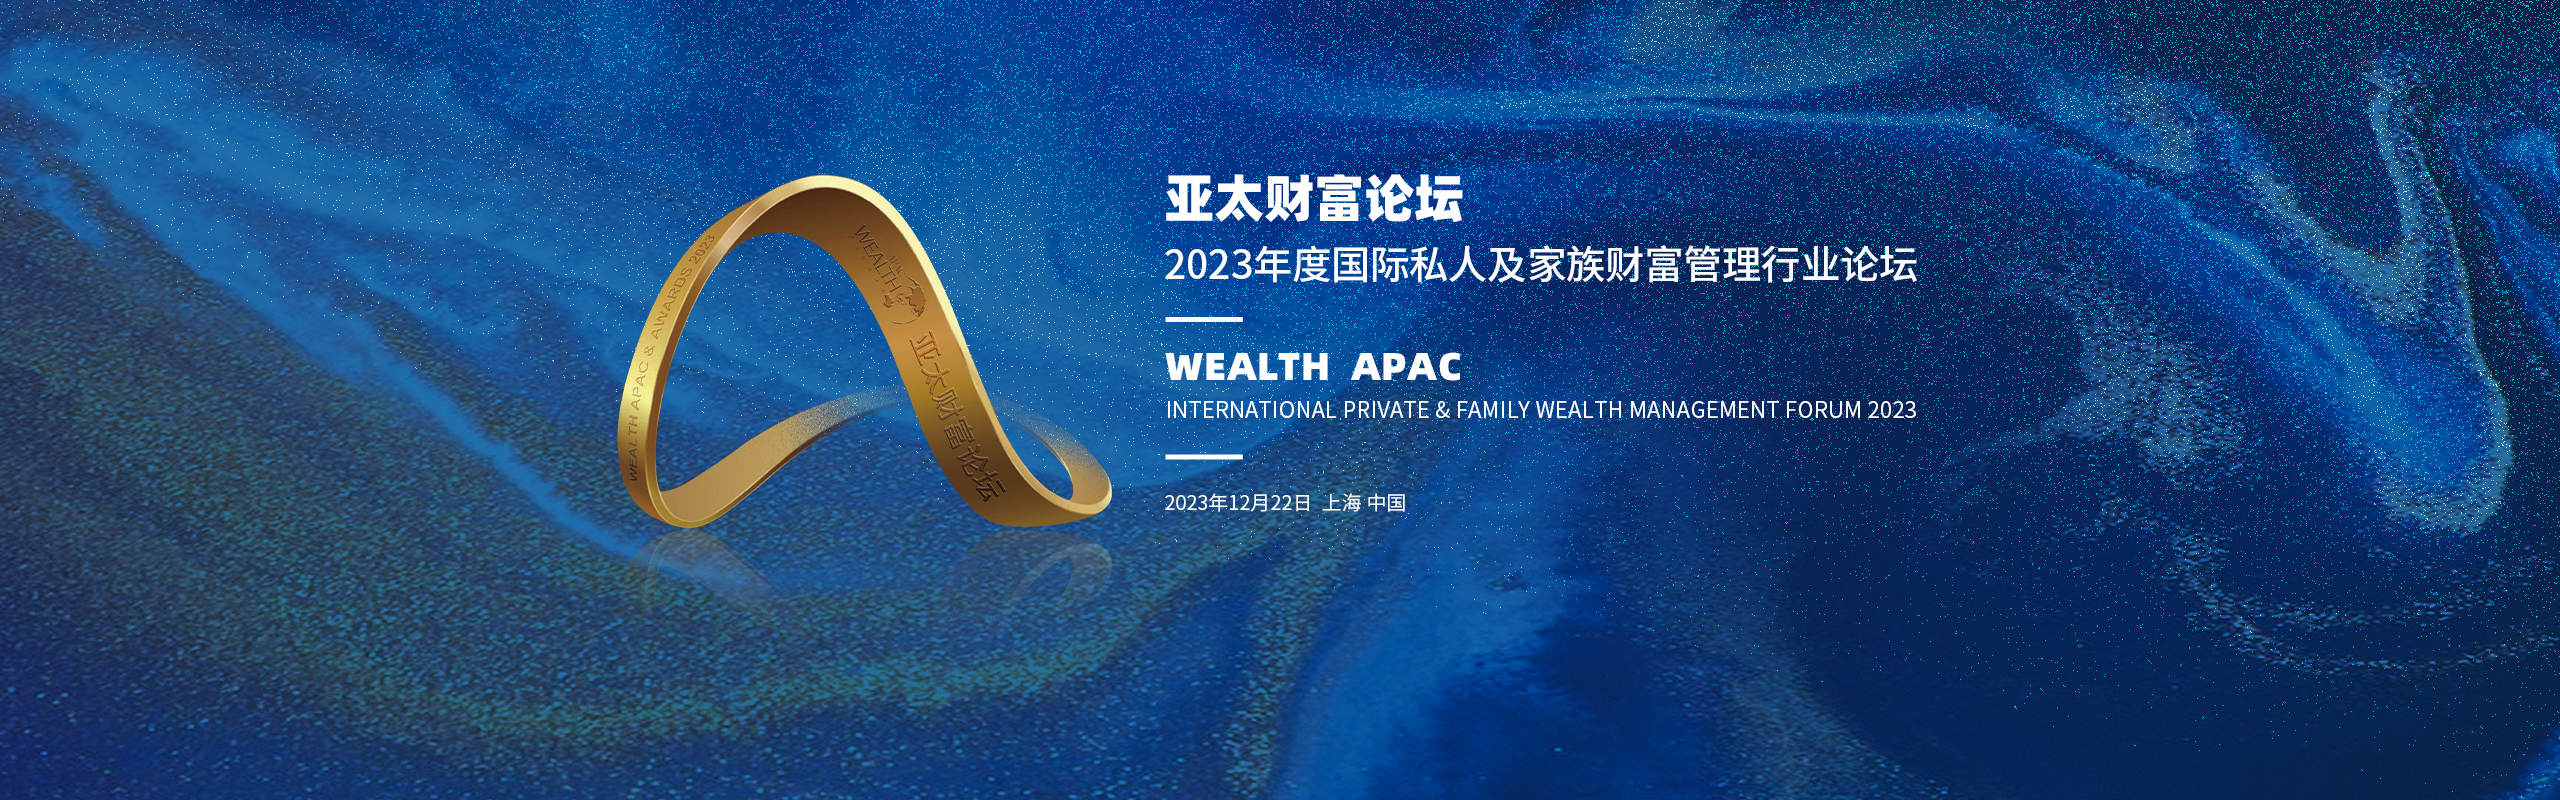 亚太财富论坛暨2023年度国际私人及家族财富管理行业颁奖盛典